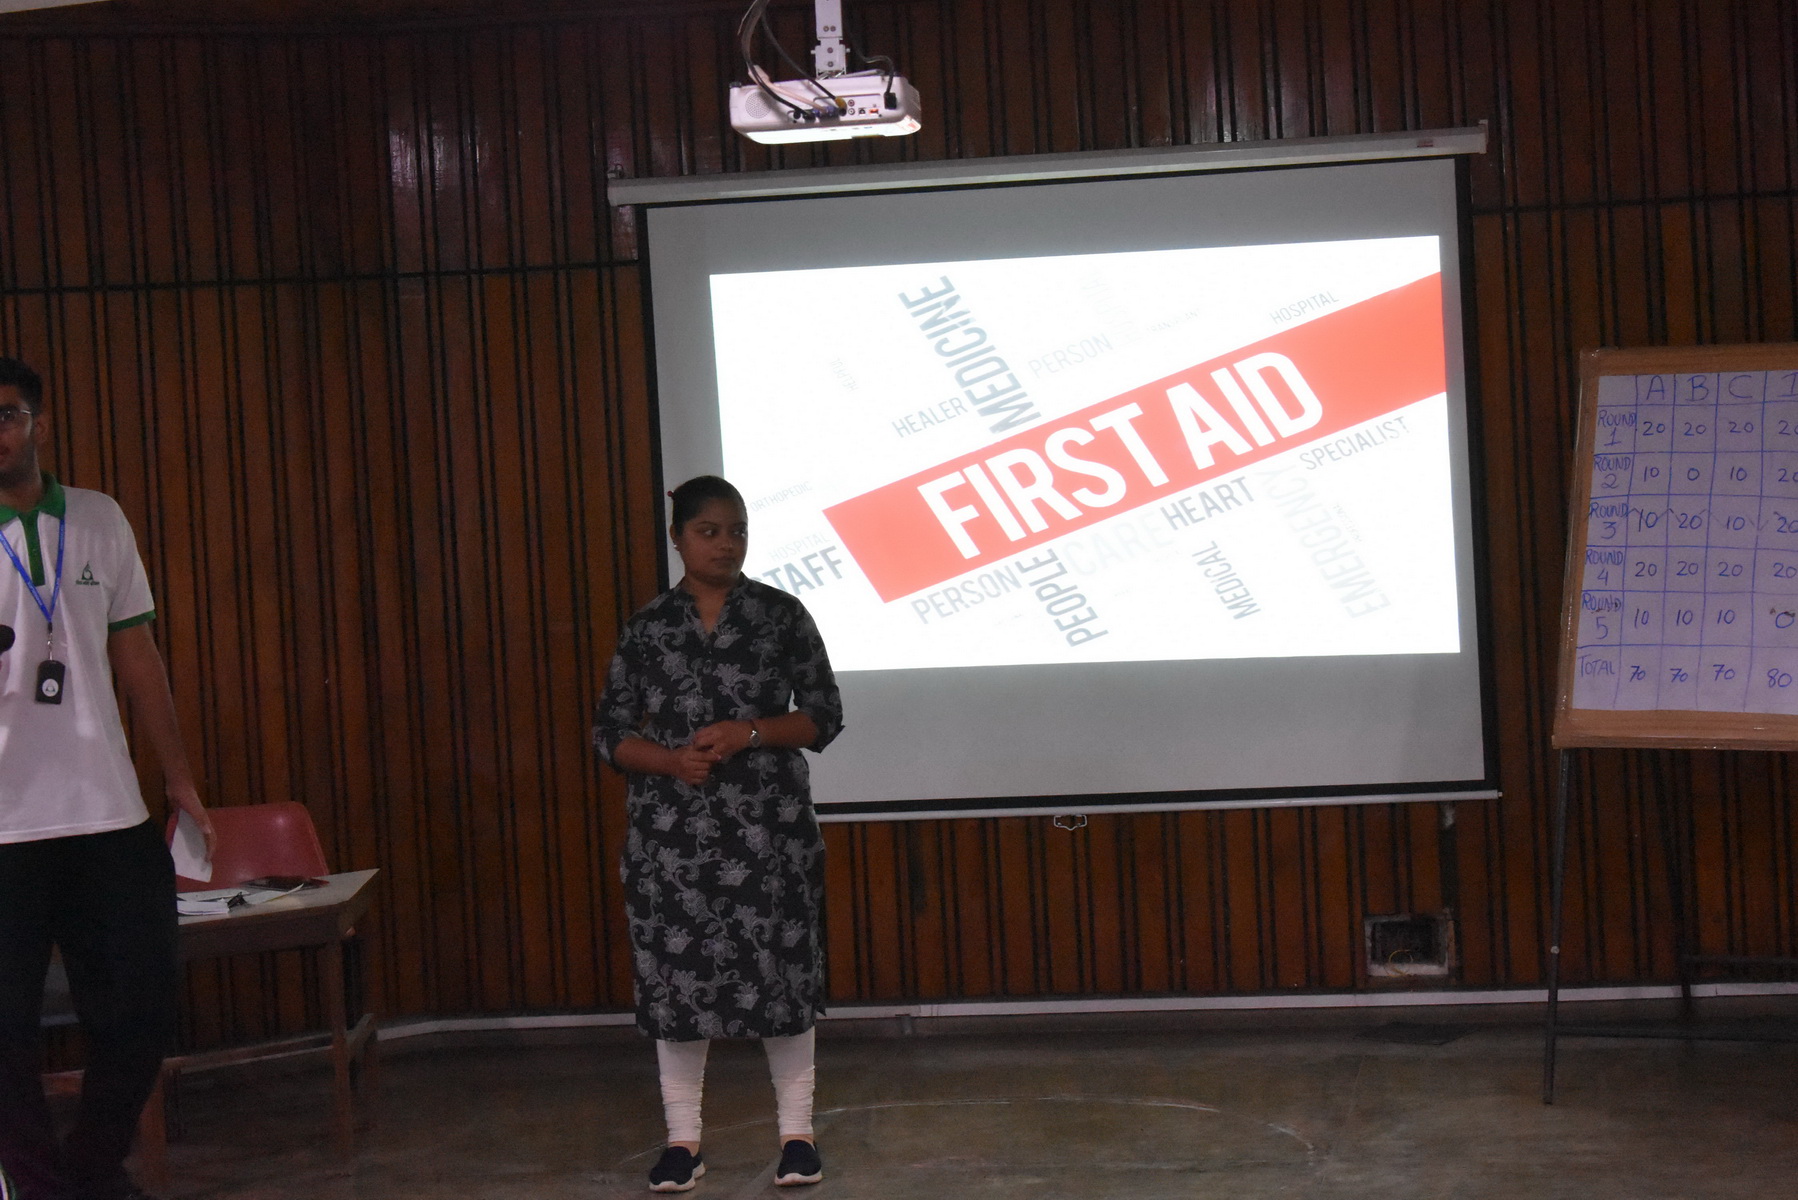 A Seminar On First Aid  <br>  12-07-2019